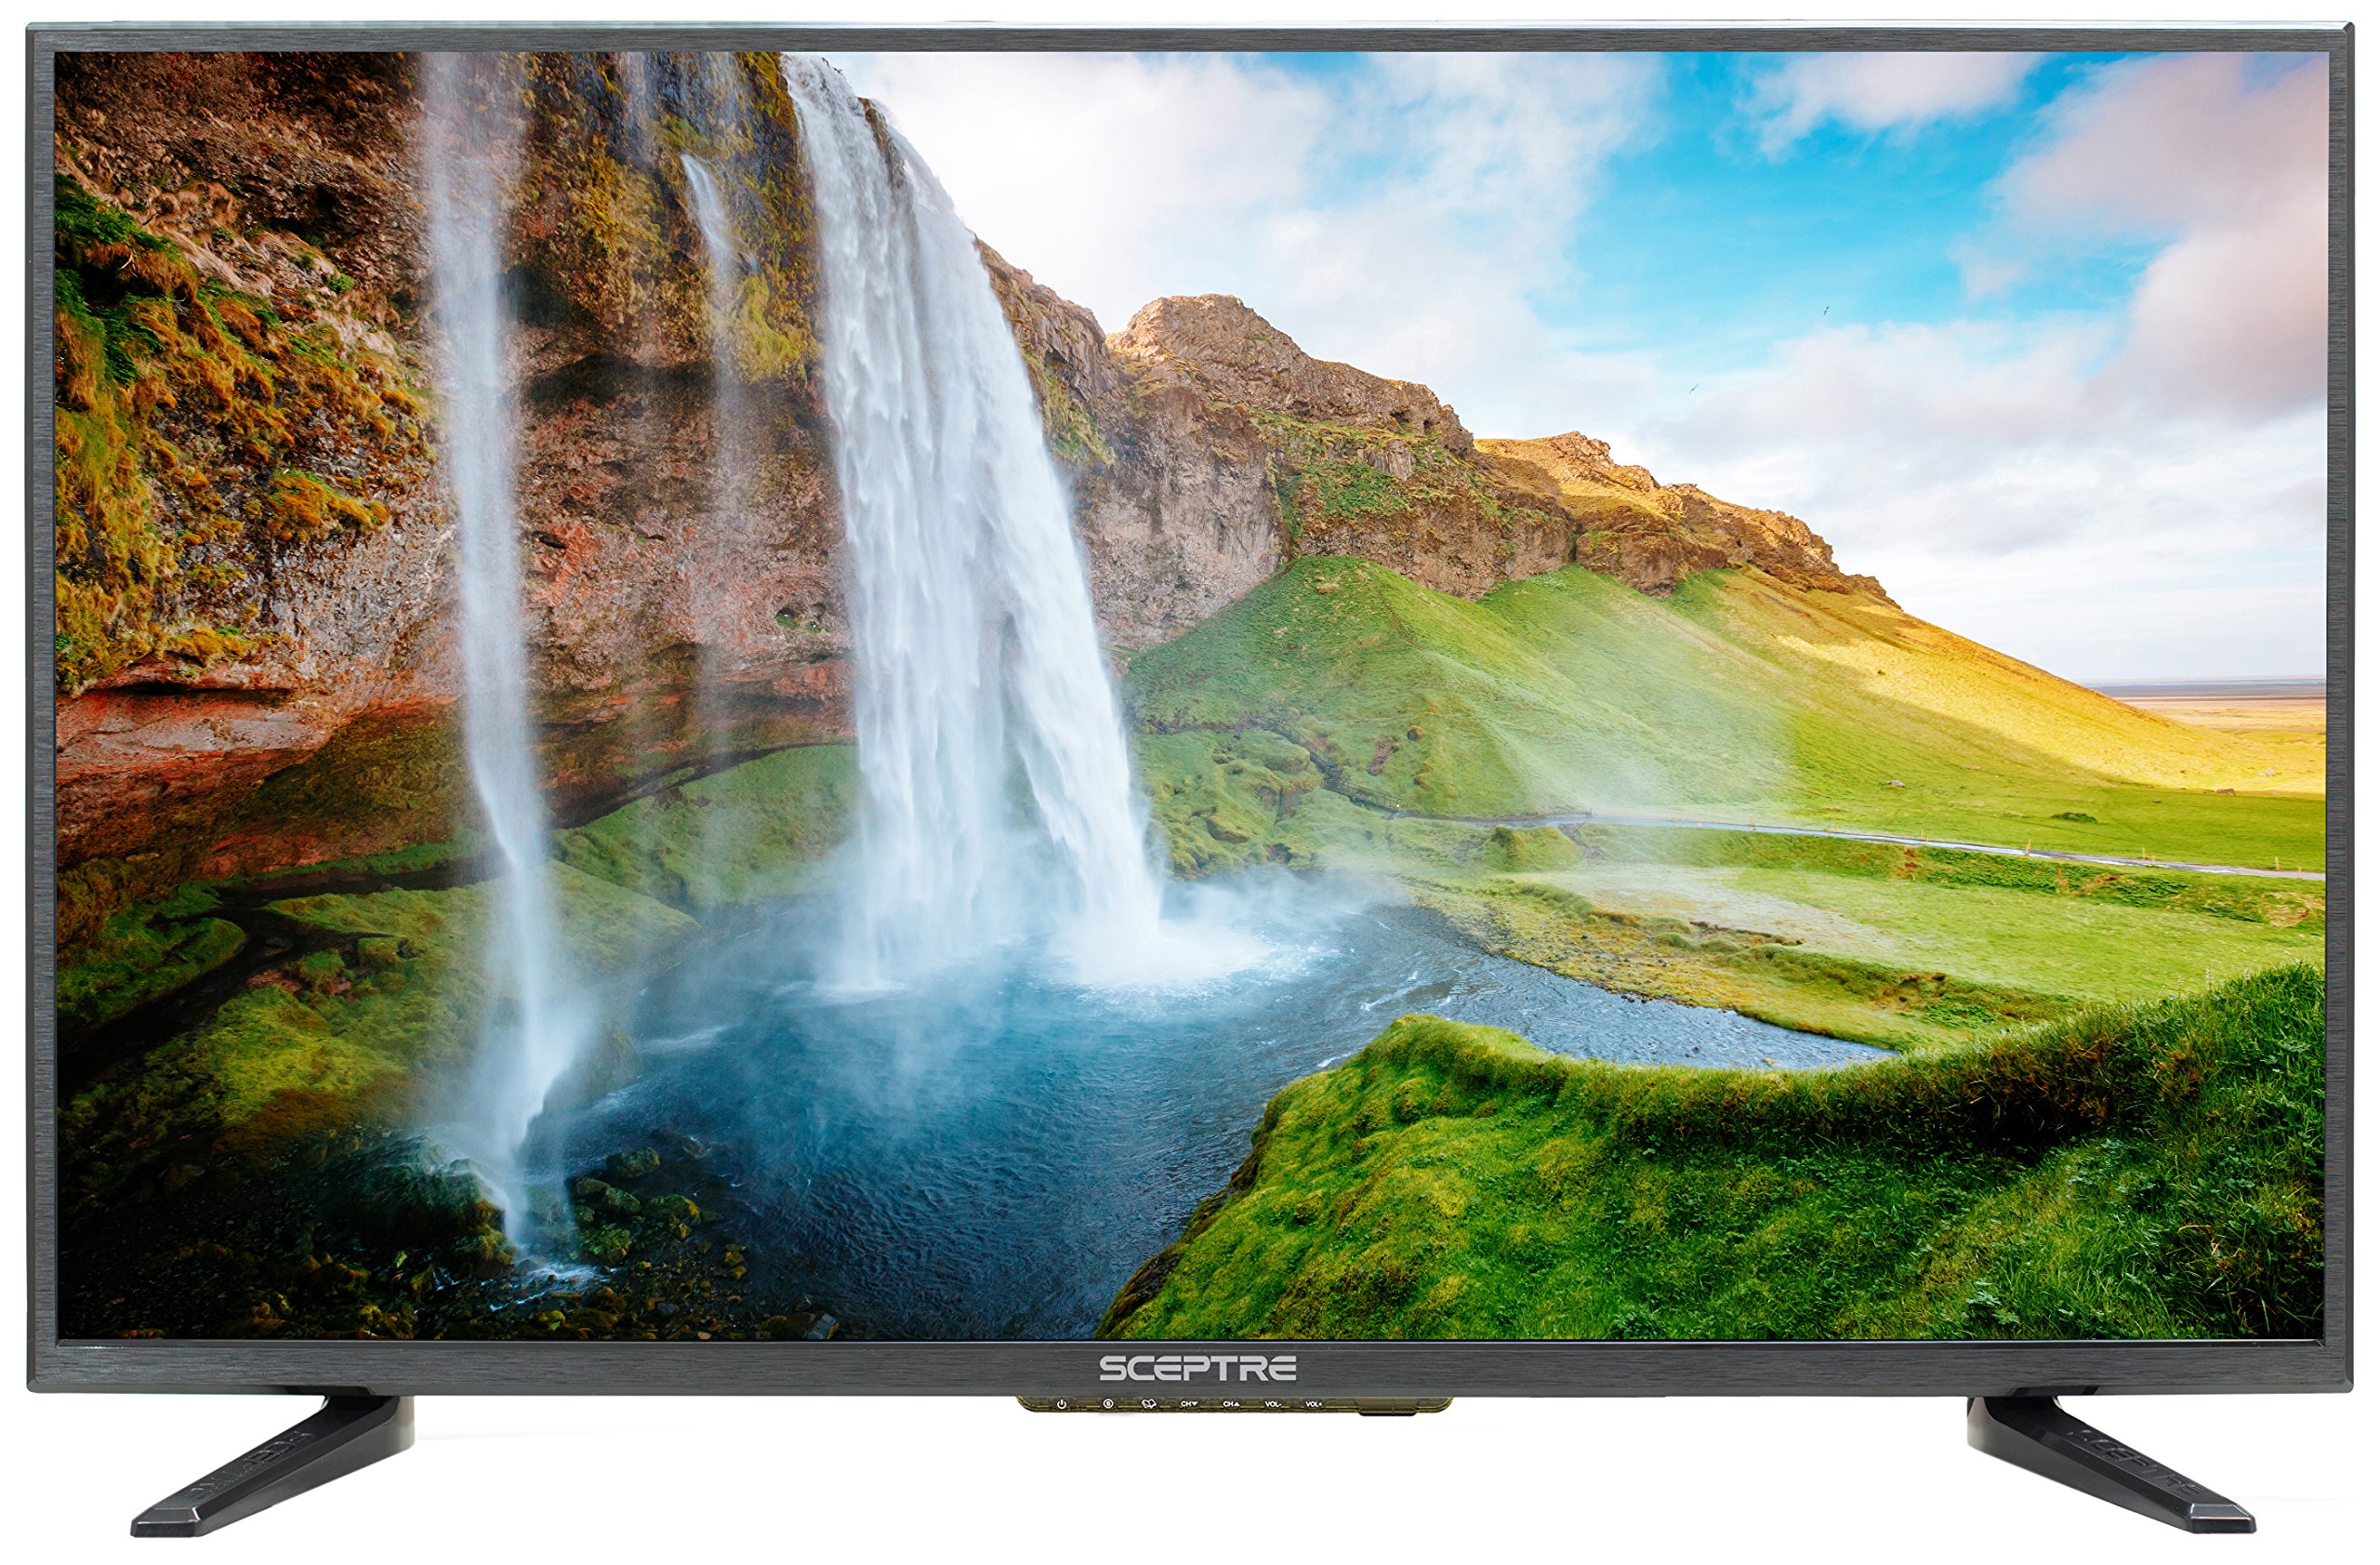 Sceptre TV LED de classe HD (720P) de 32 pol. (X322BV-SR)